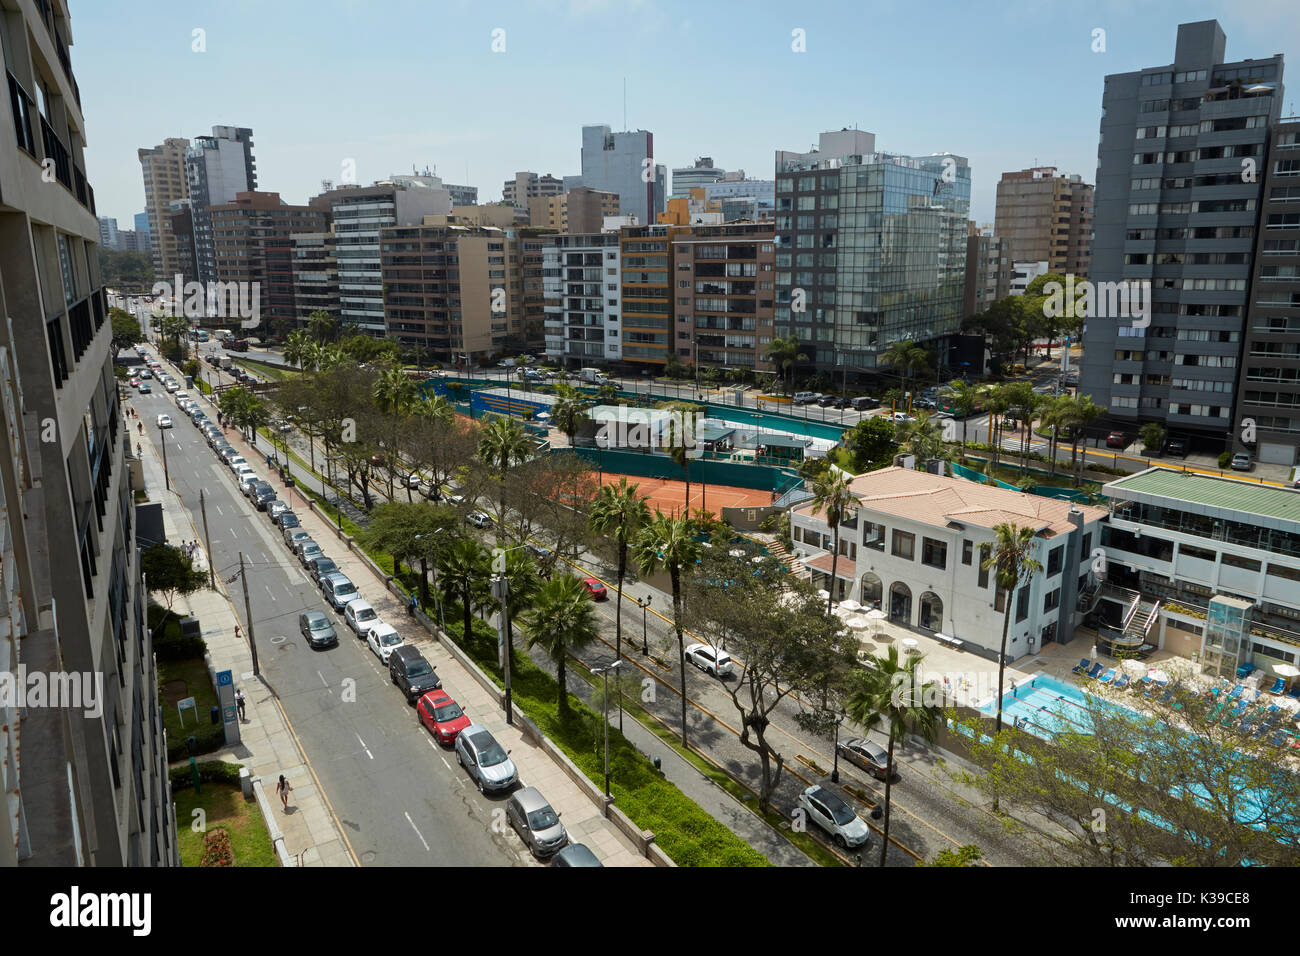 Appartements et terrains de tennis le long du Malecon Balta, Miraflores, Lima, Pérou, Amérique du Sud Banque D'Images